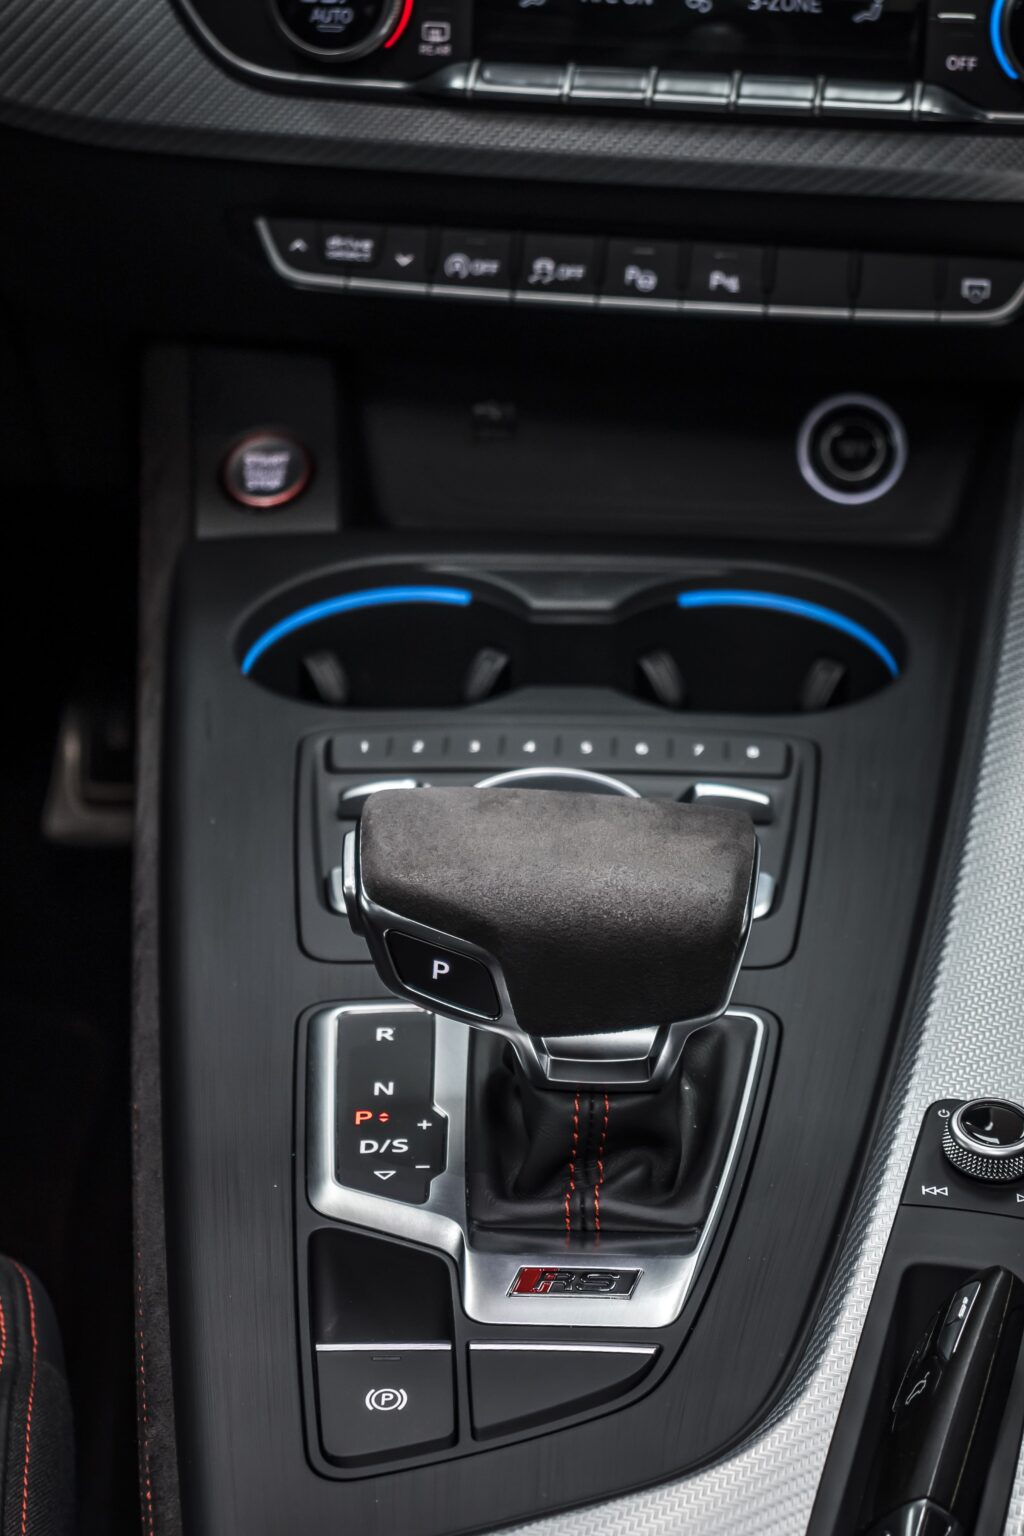 alt = "Audi RS4 Avant 2.9 Quattro interiores"